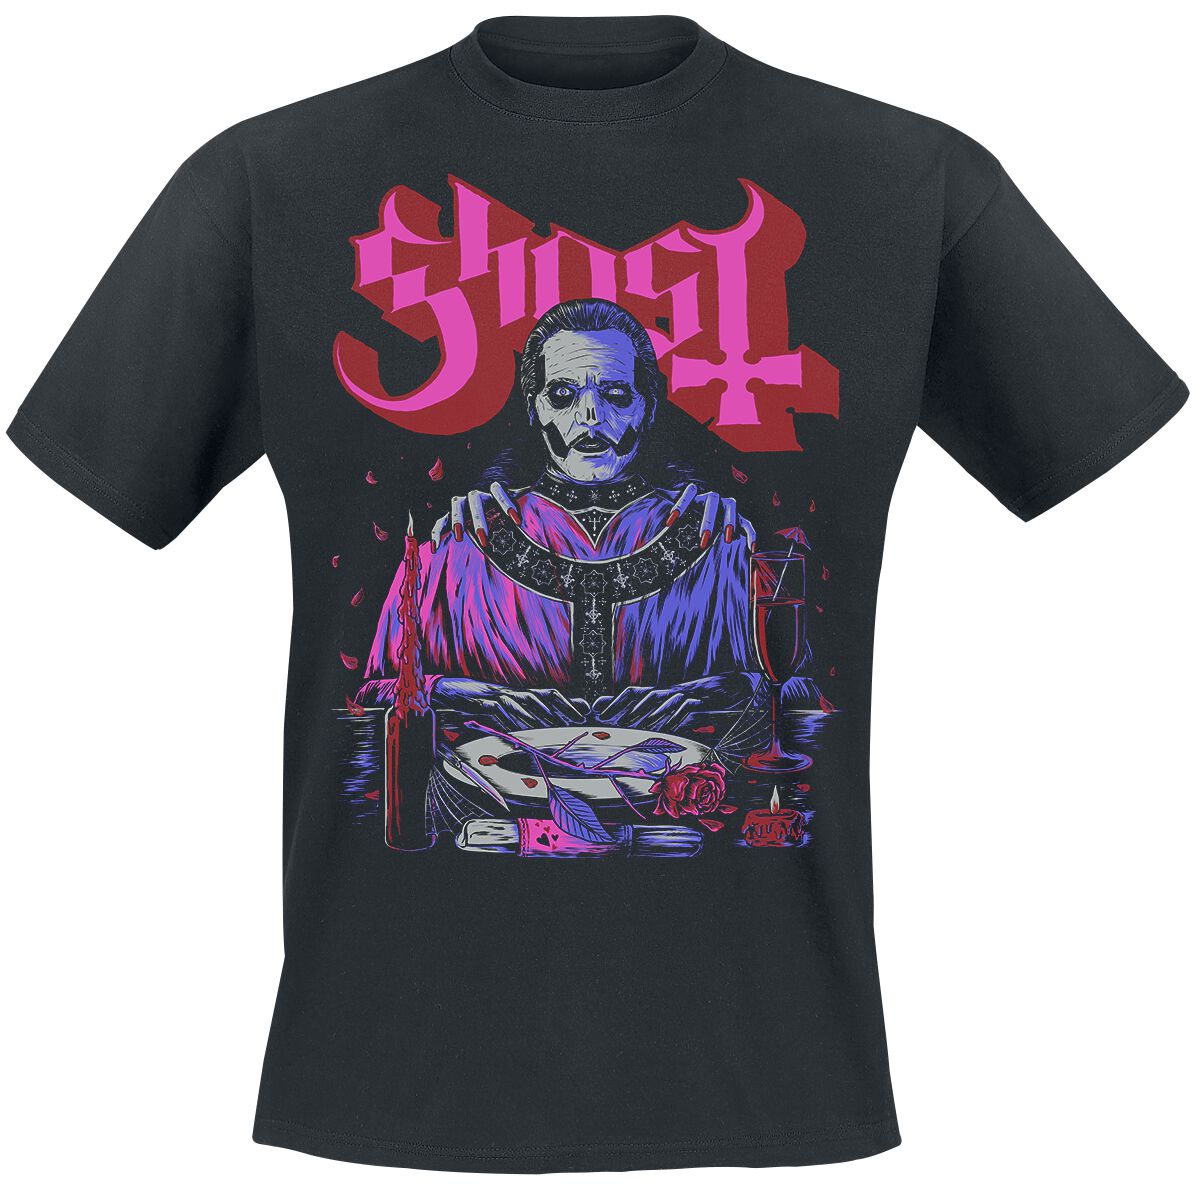 Ghost T-Shirt - Be My Valentines Day - S bis XL - für Männer - Größe S - schwarz  - Lizenziertes Merchandise!